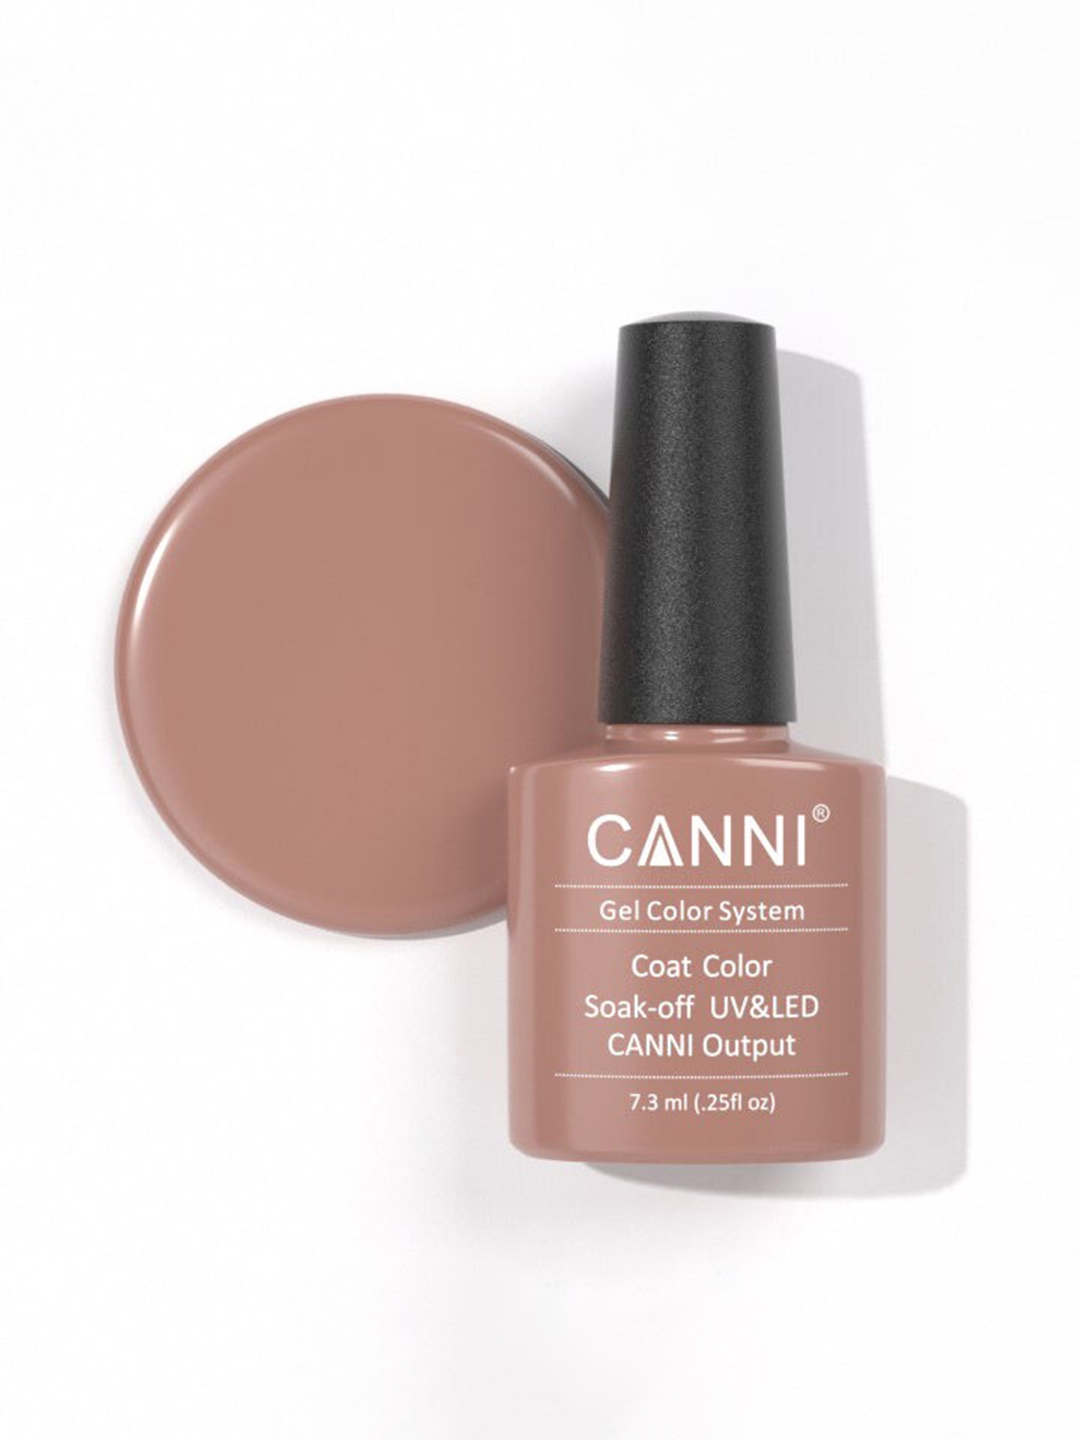 CANNI Gel Color System Coat Color Soak-Off UV & LED Nail Polish 7.3 ml-Flesh Pink 089